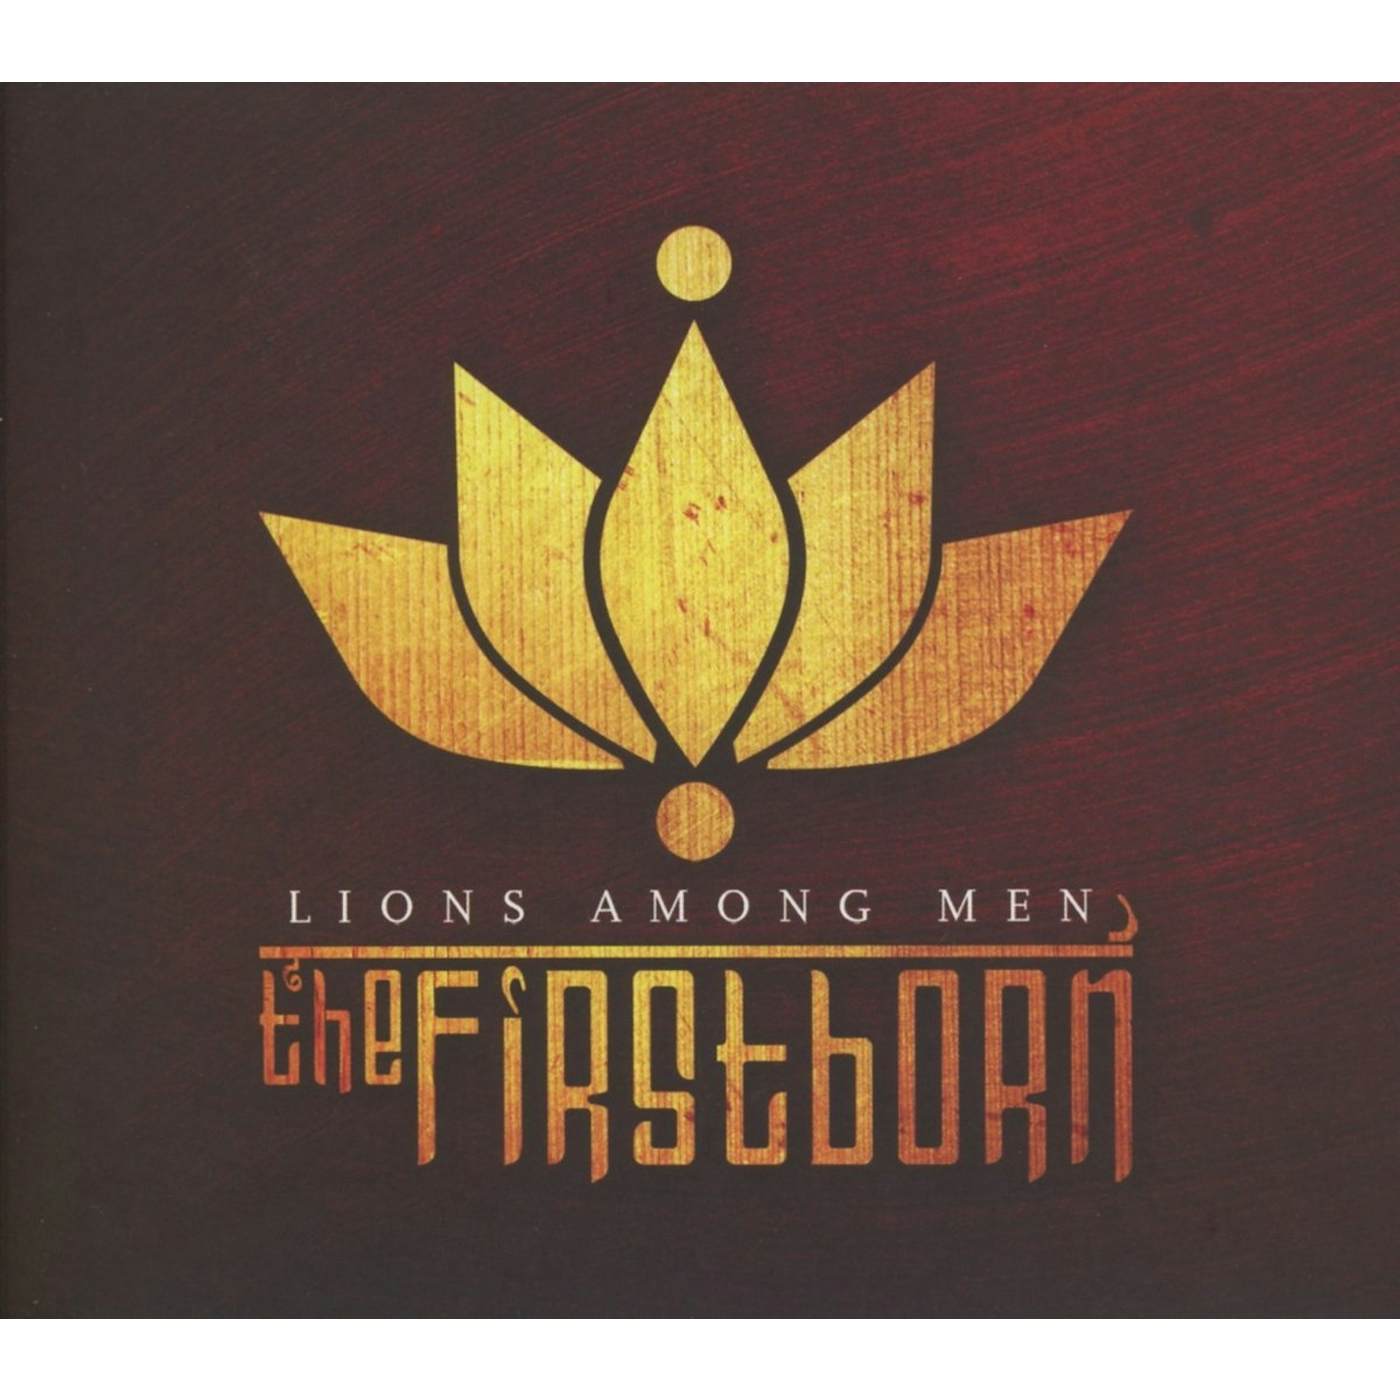 Firstborn LIONS AMONG MEN CD